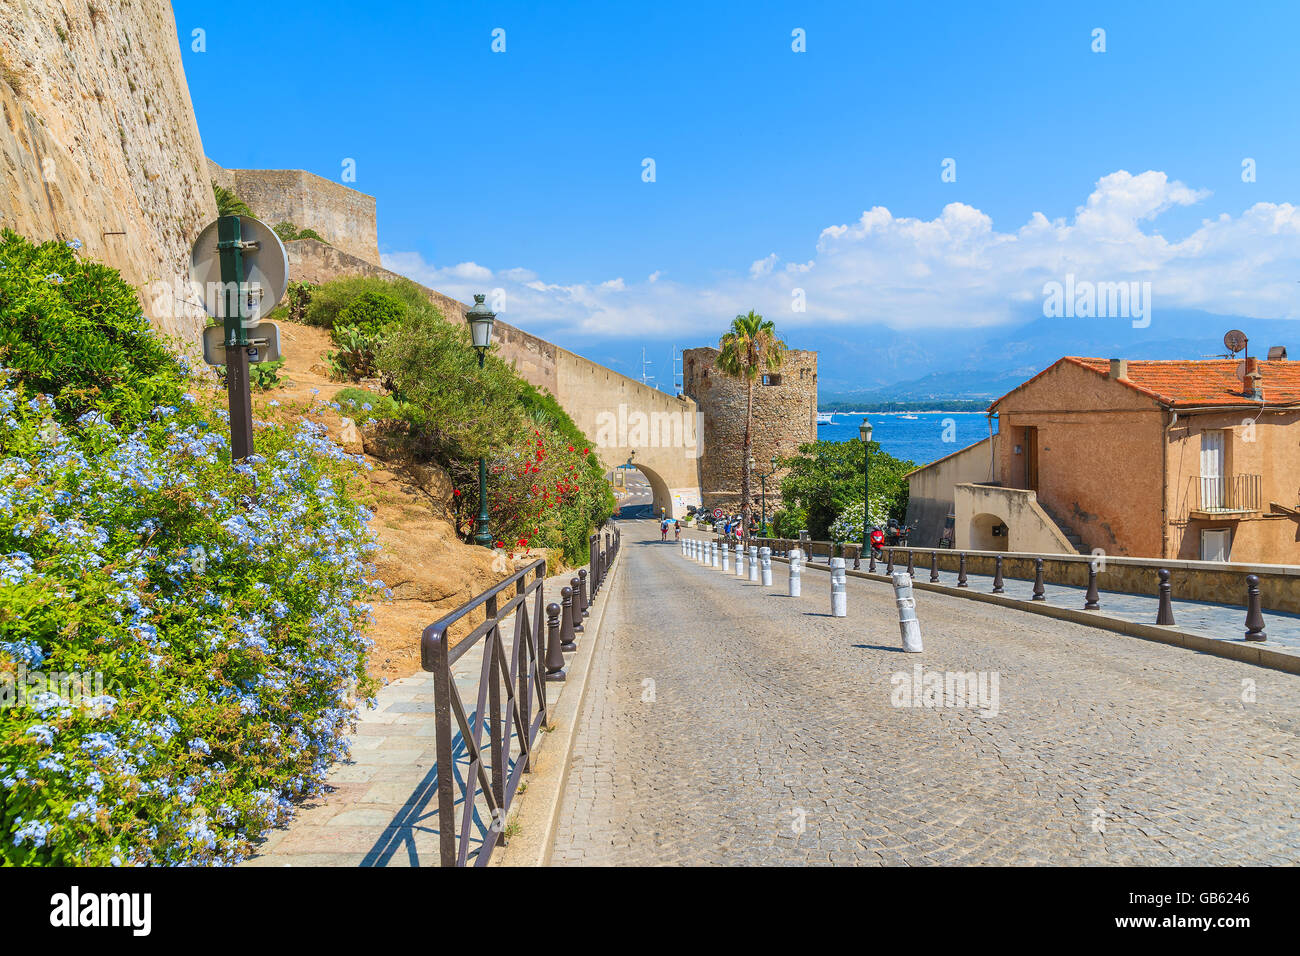 Straße von Zitadelle Gebäude in Calvi Stadt führt zum Hafen, Insel Korsika, Frankreich Stockfoto